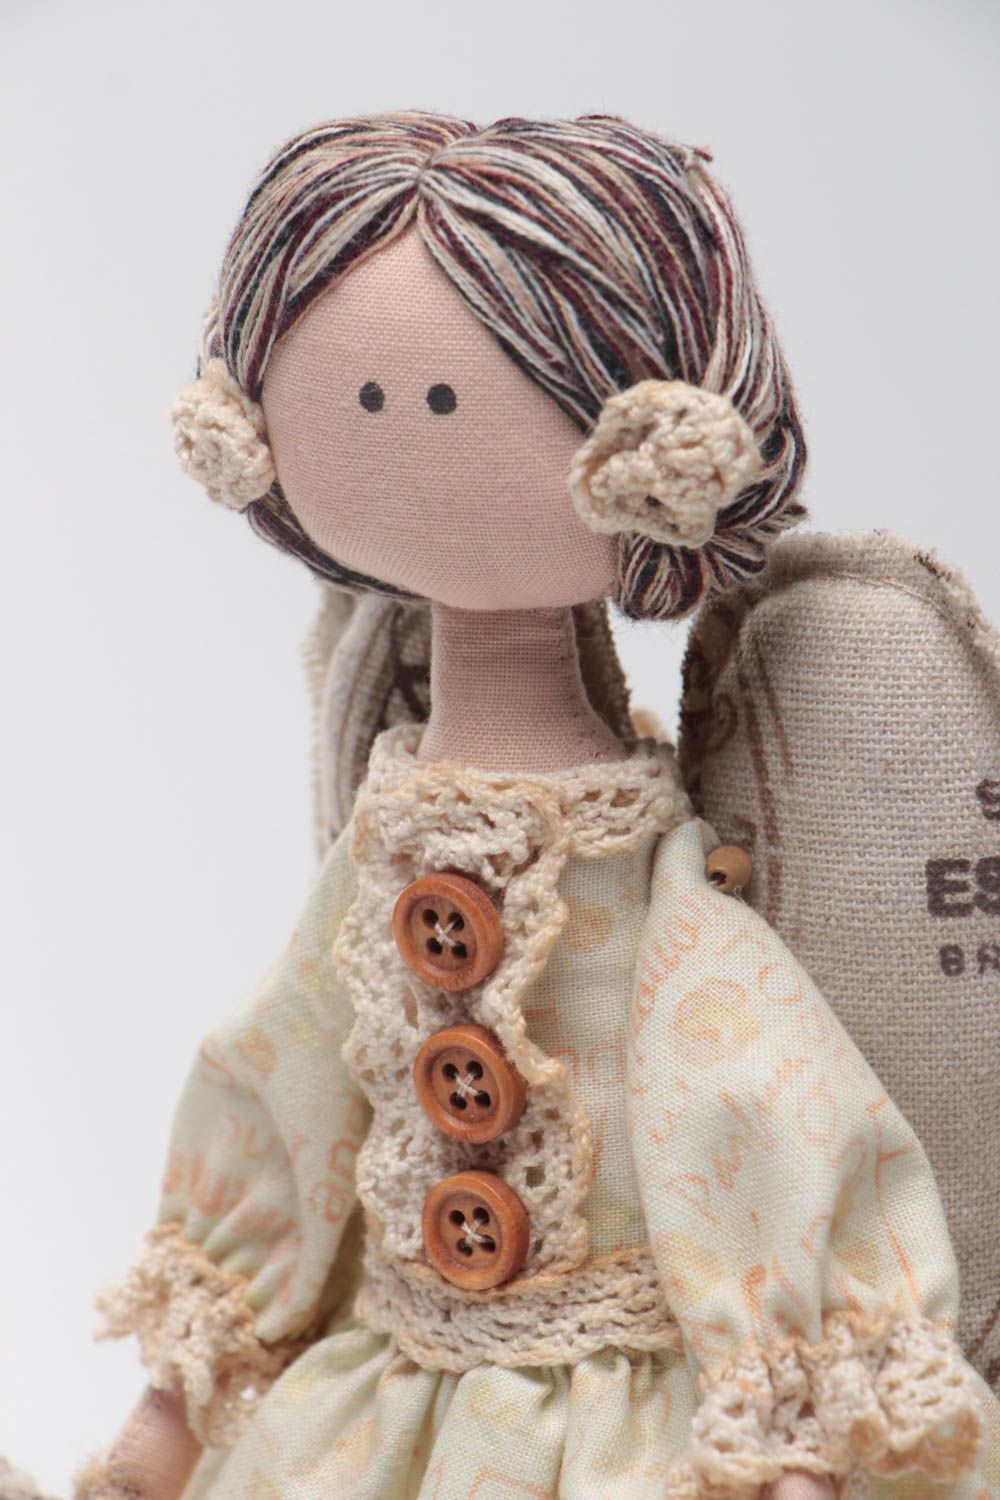 Авторская кукла из ткани на подставке красивая ручной работы из хлопка и льна Англел фото 3